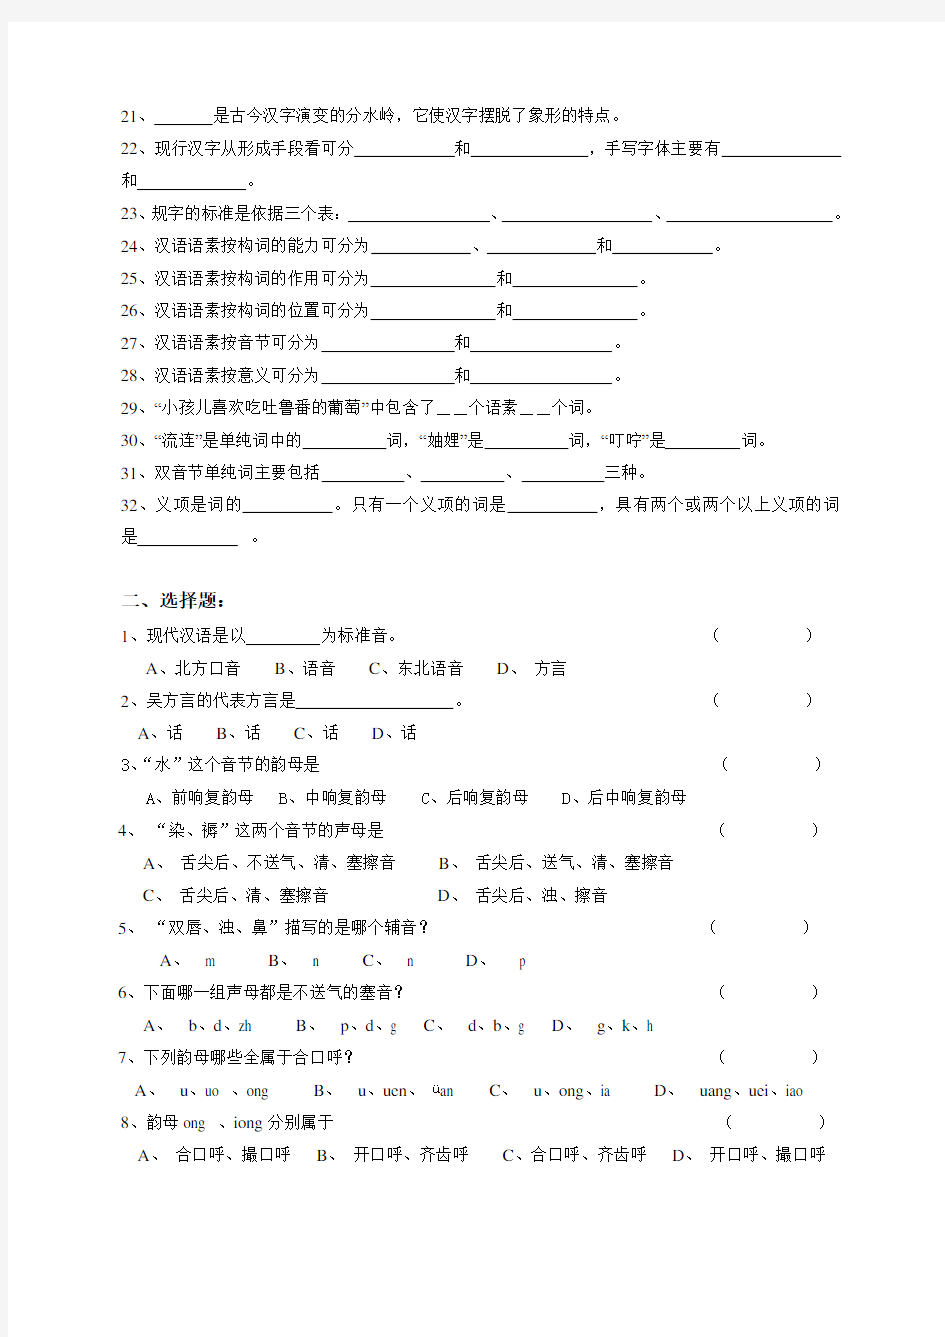 现代汉语综合练习(上)2015年